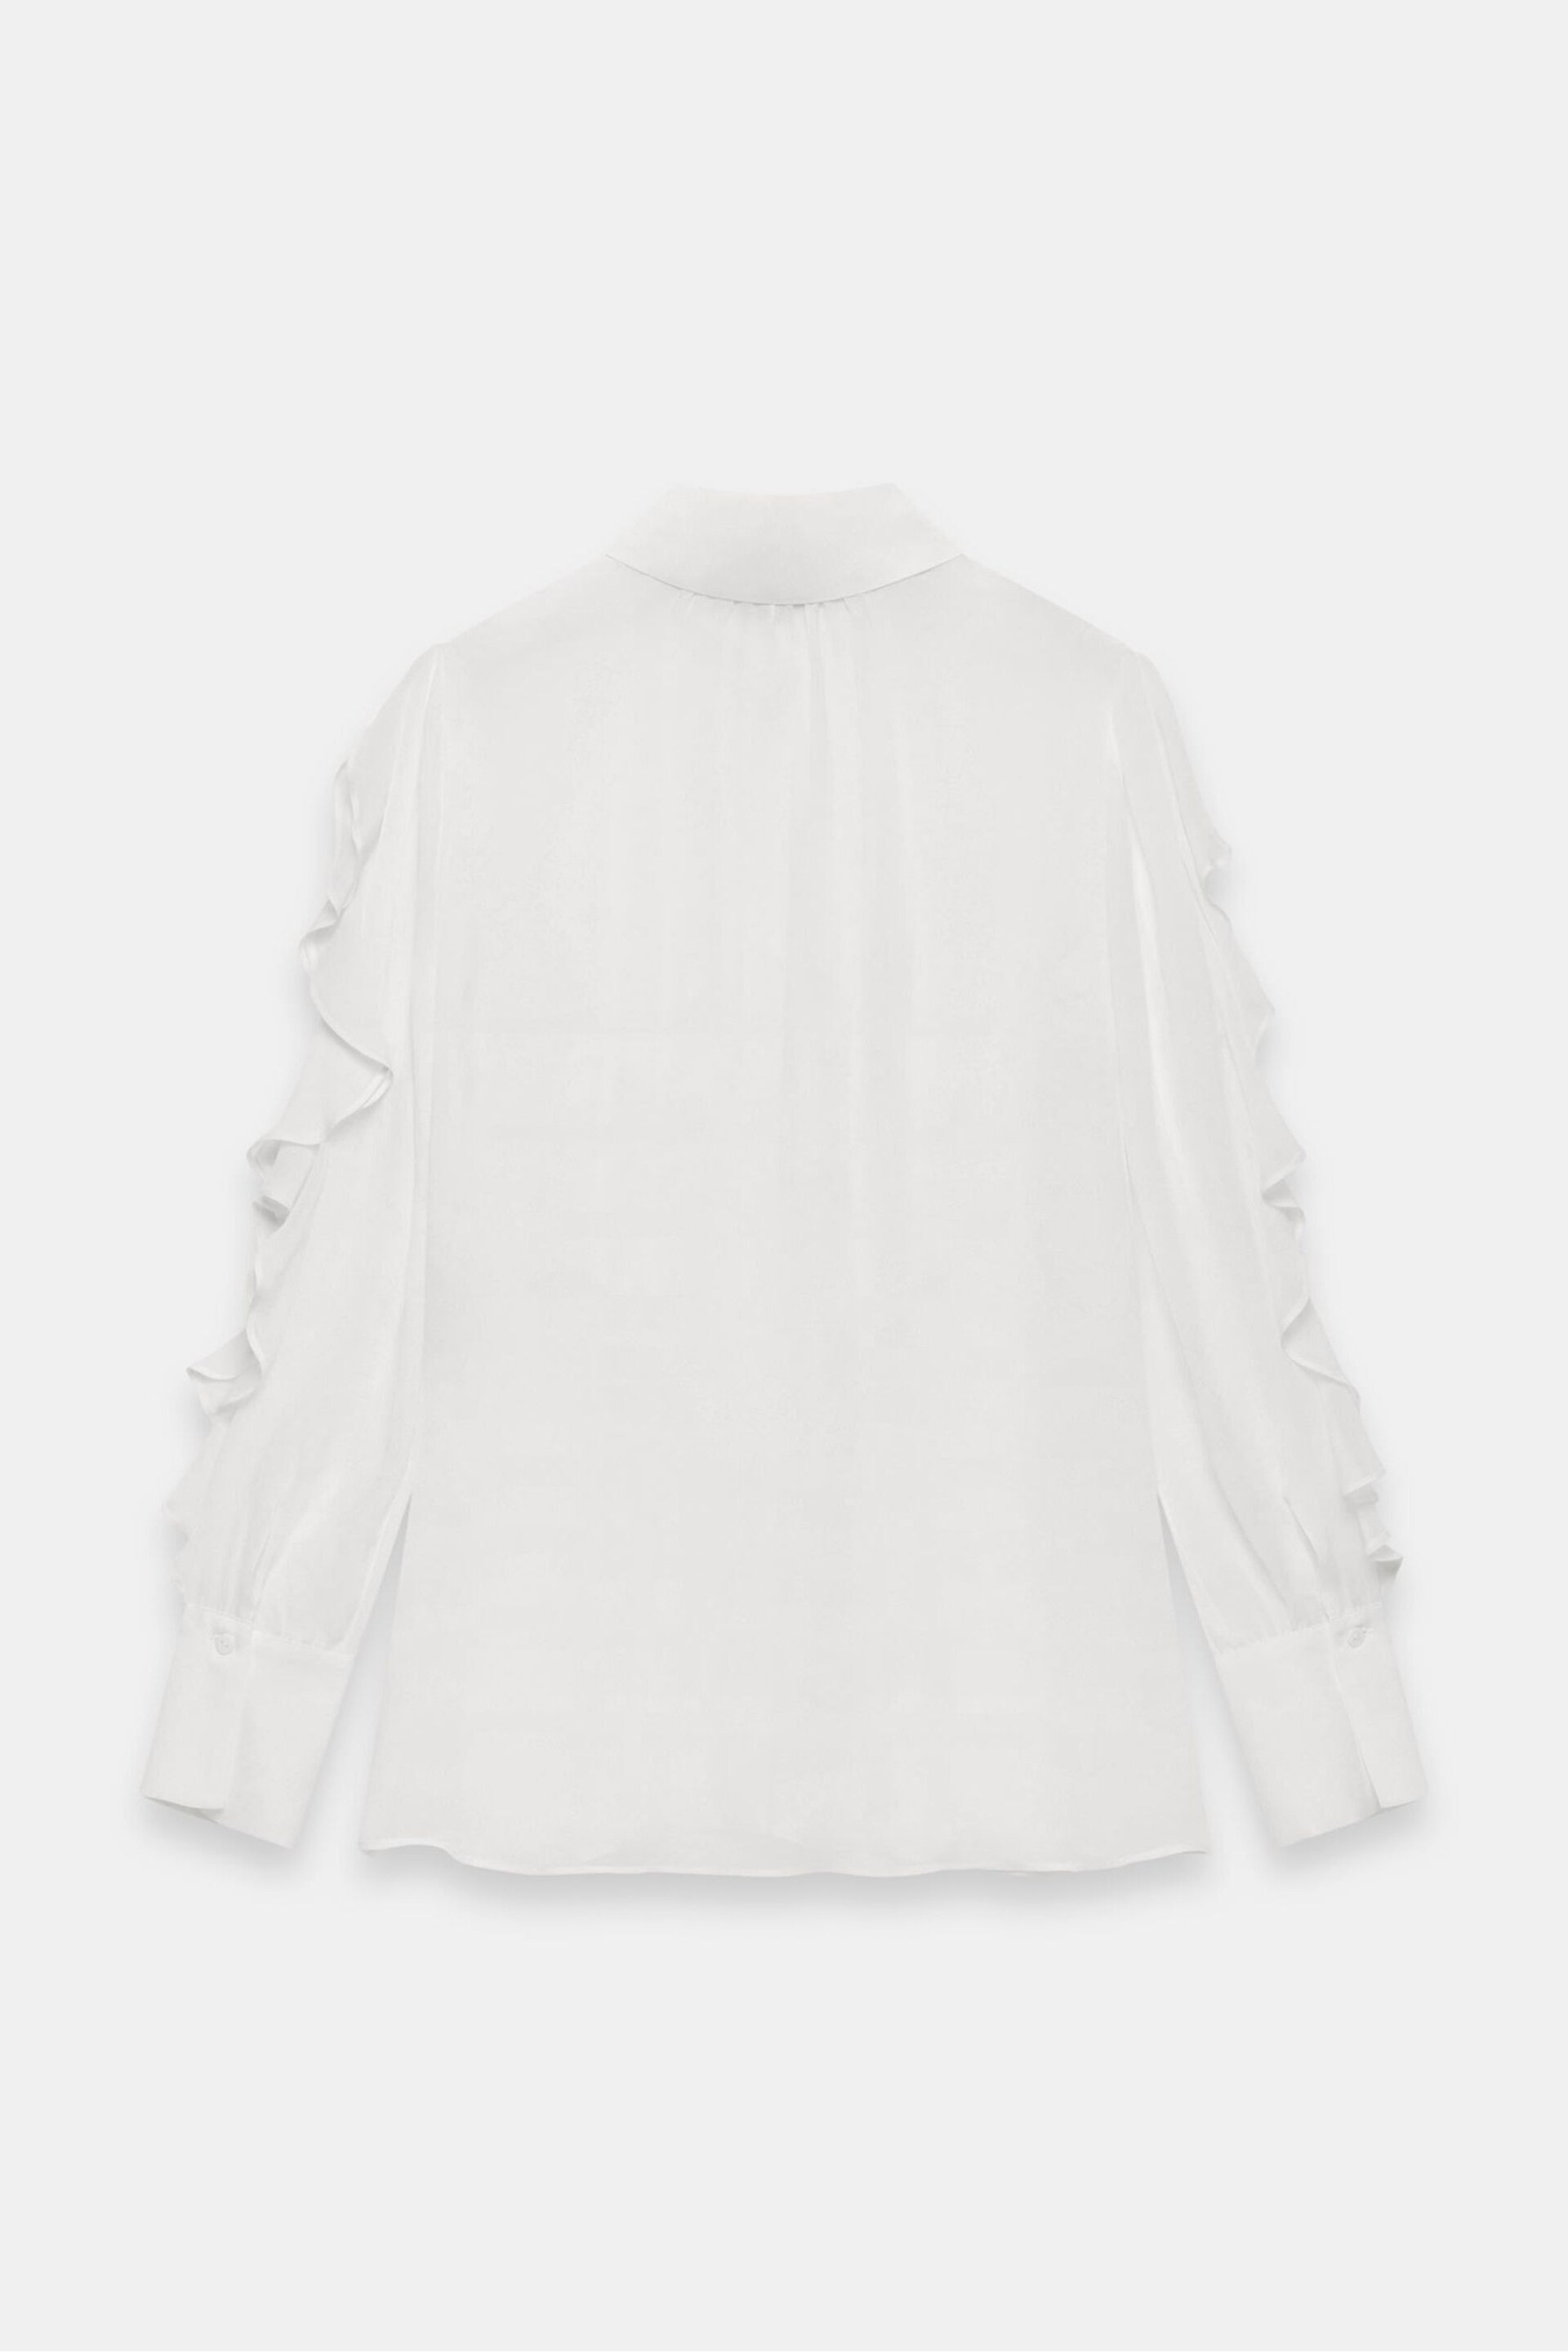 Mint Velvet Cream Ruffled Shirt - Image 4 of 4